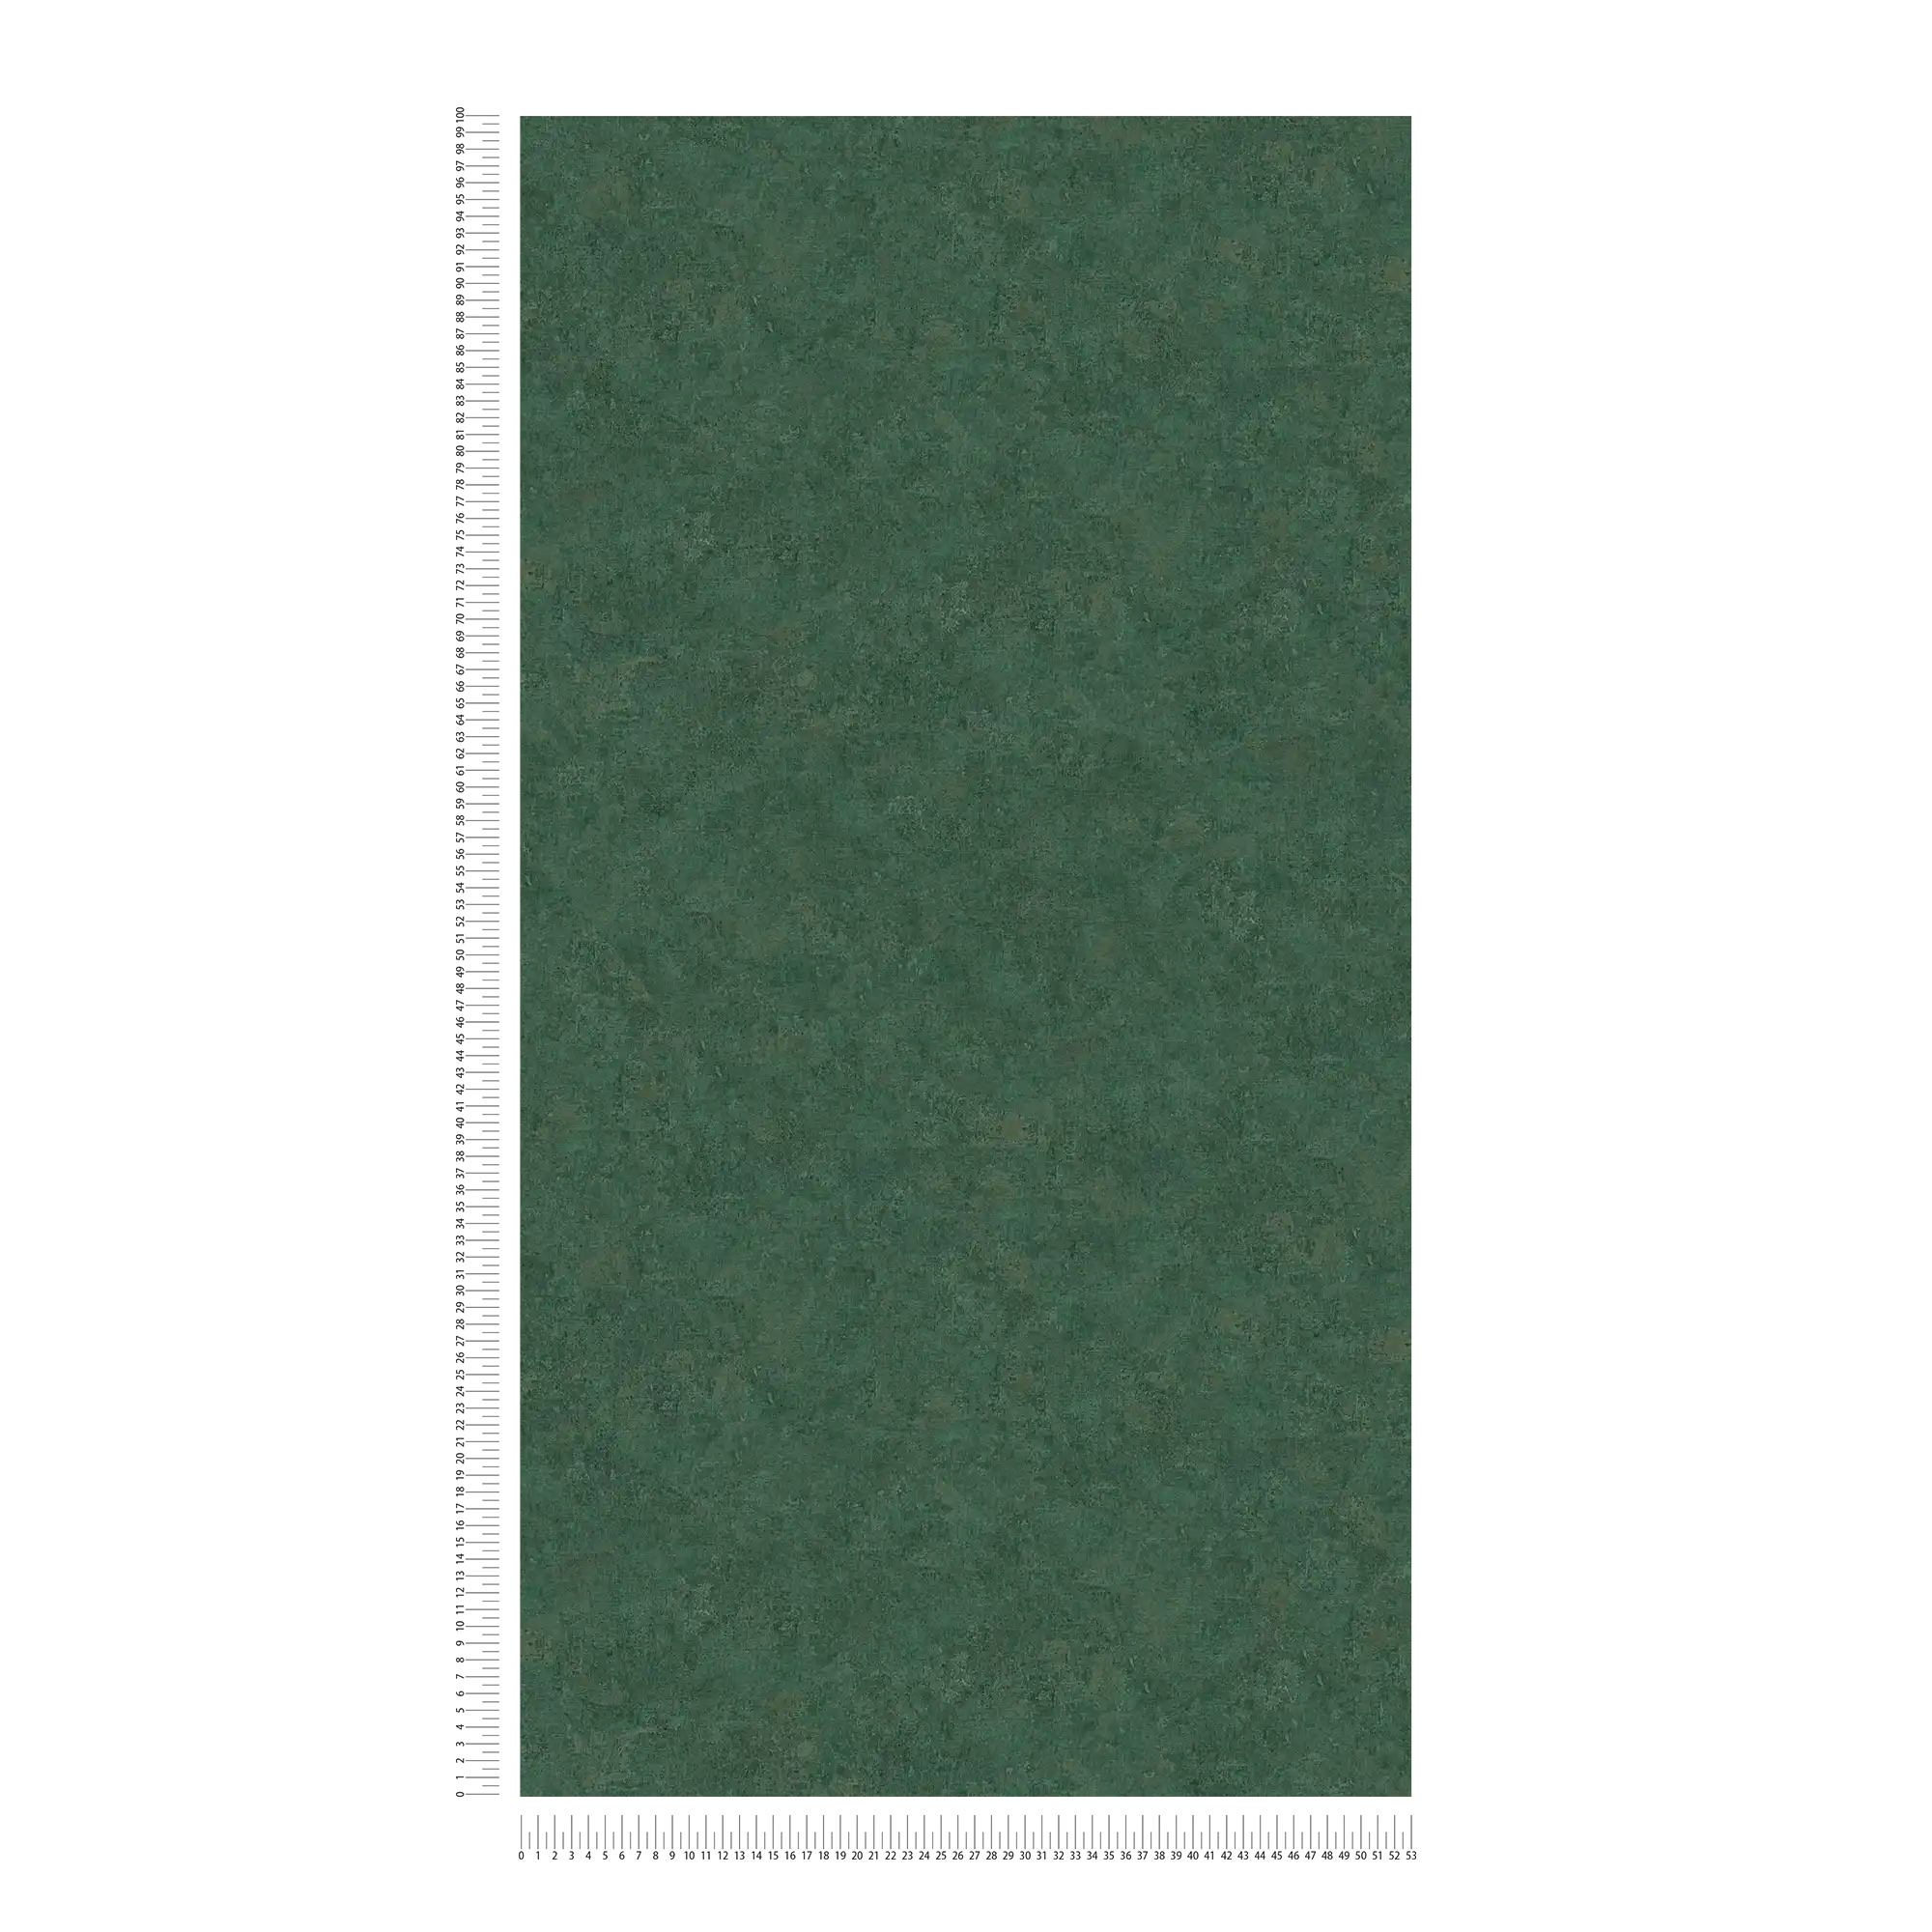             Papel pintado no tejido liso, patrón de colores y aspecto vintage - verde
        